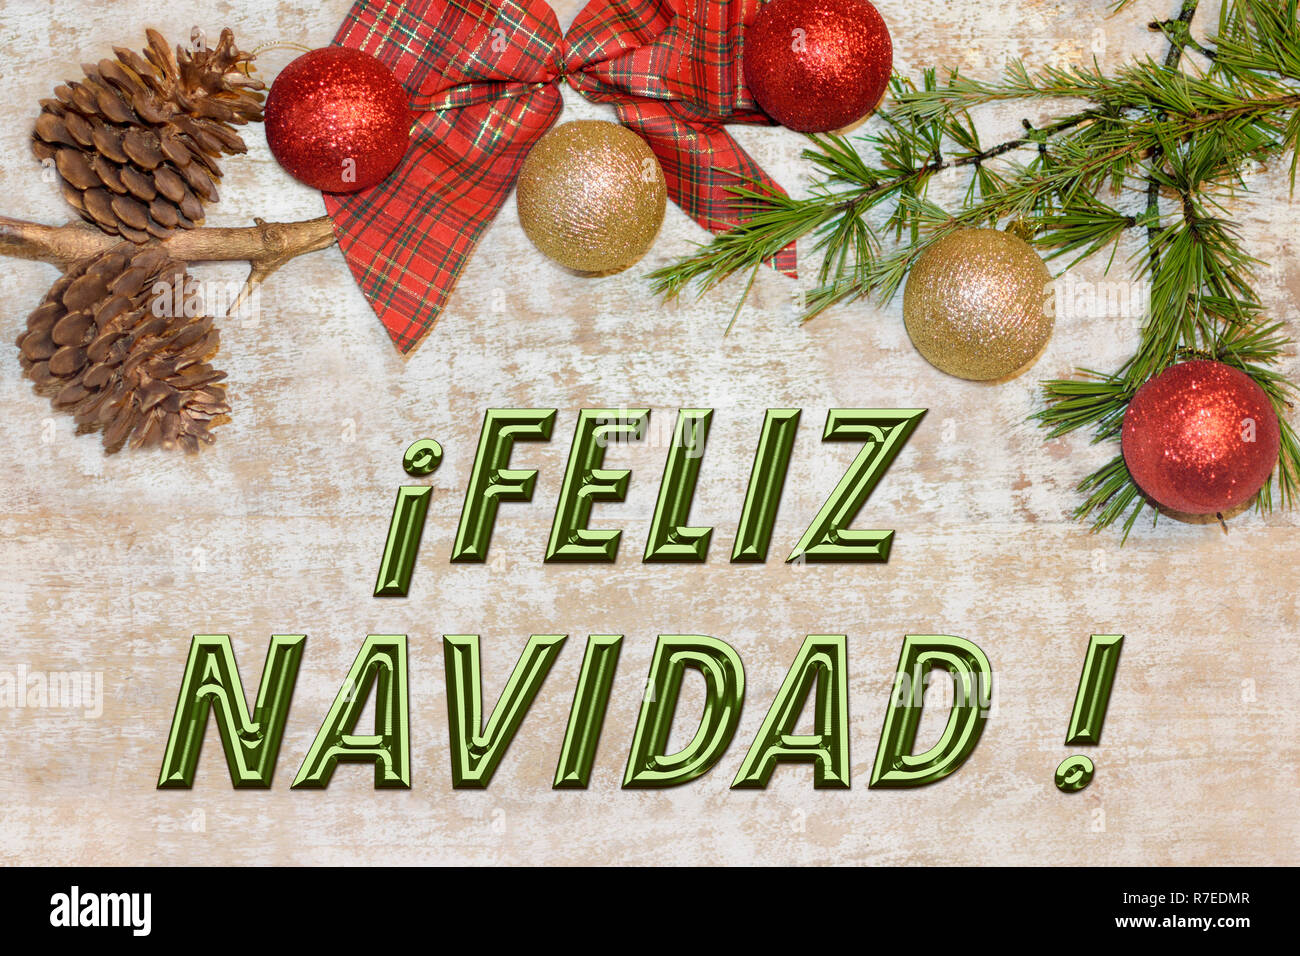 Weihnachten Zusammensetzung Rahmen für die glückwunschkarte. "Feliz Navidad" Stockfoto